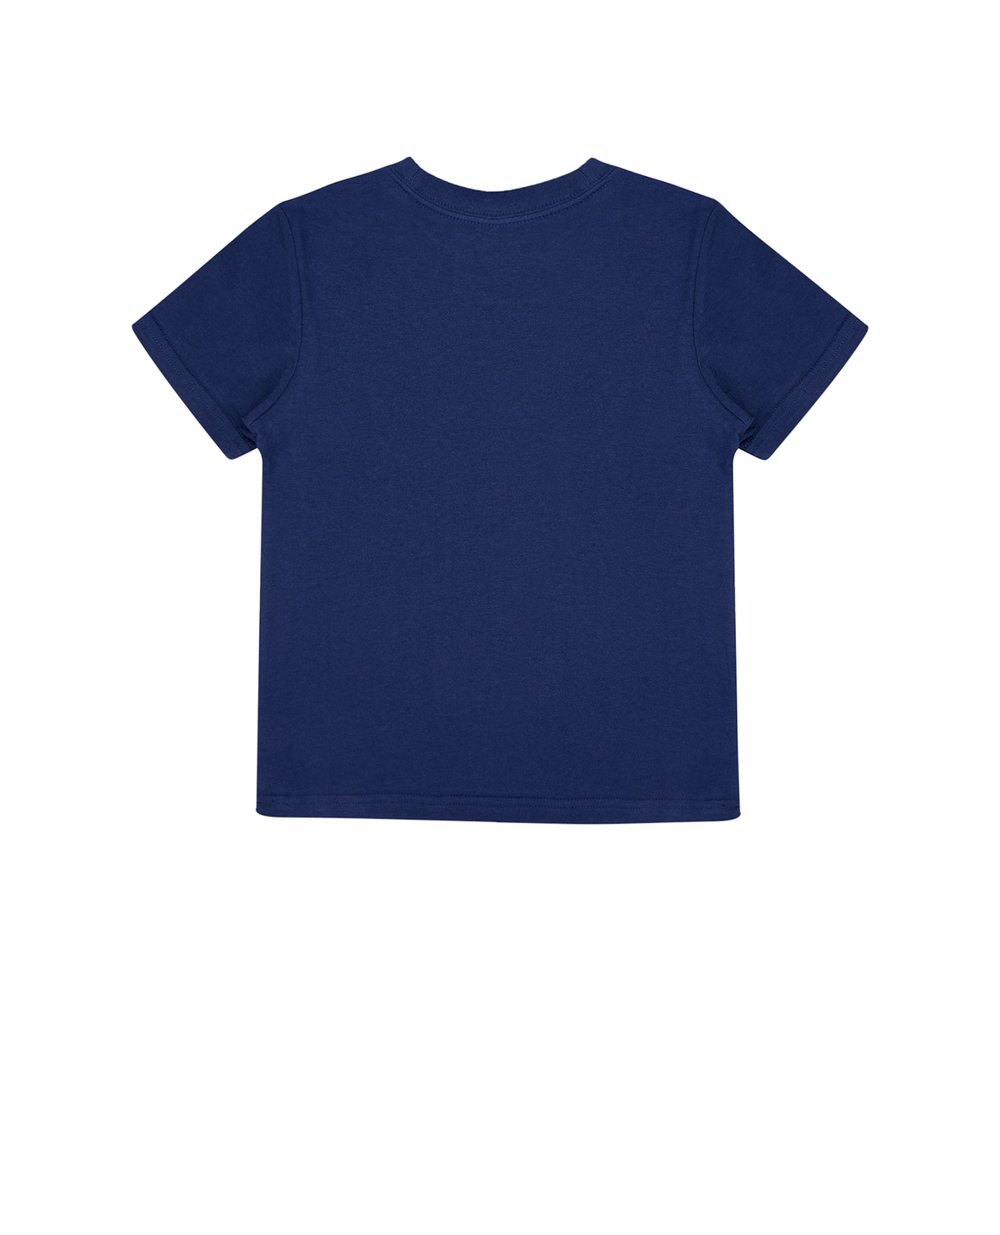 Детская футболка Polo Bear Polo Ralph Lauren Kids 320853828018, синий цвет • Купить в интернет-магазине Kameron